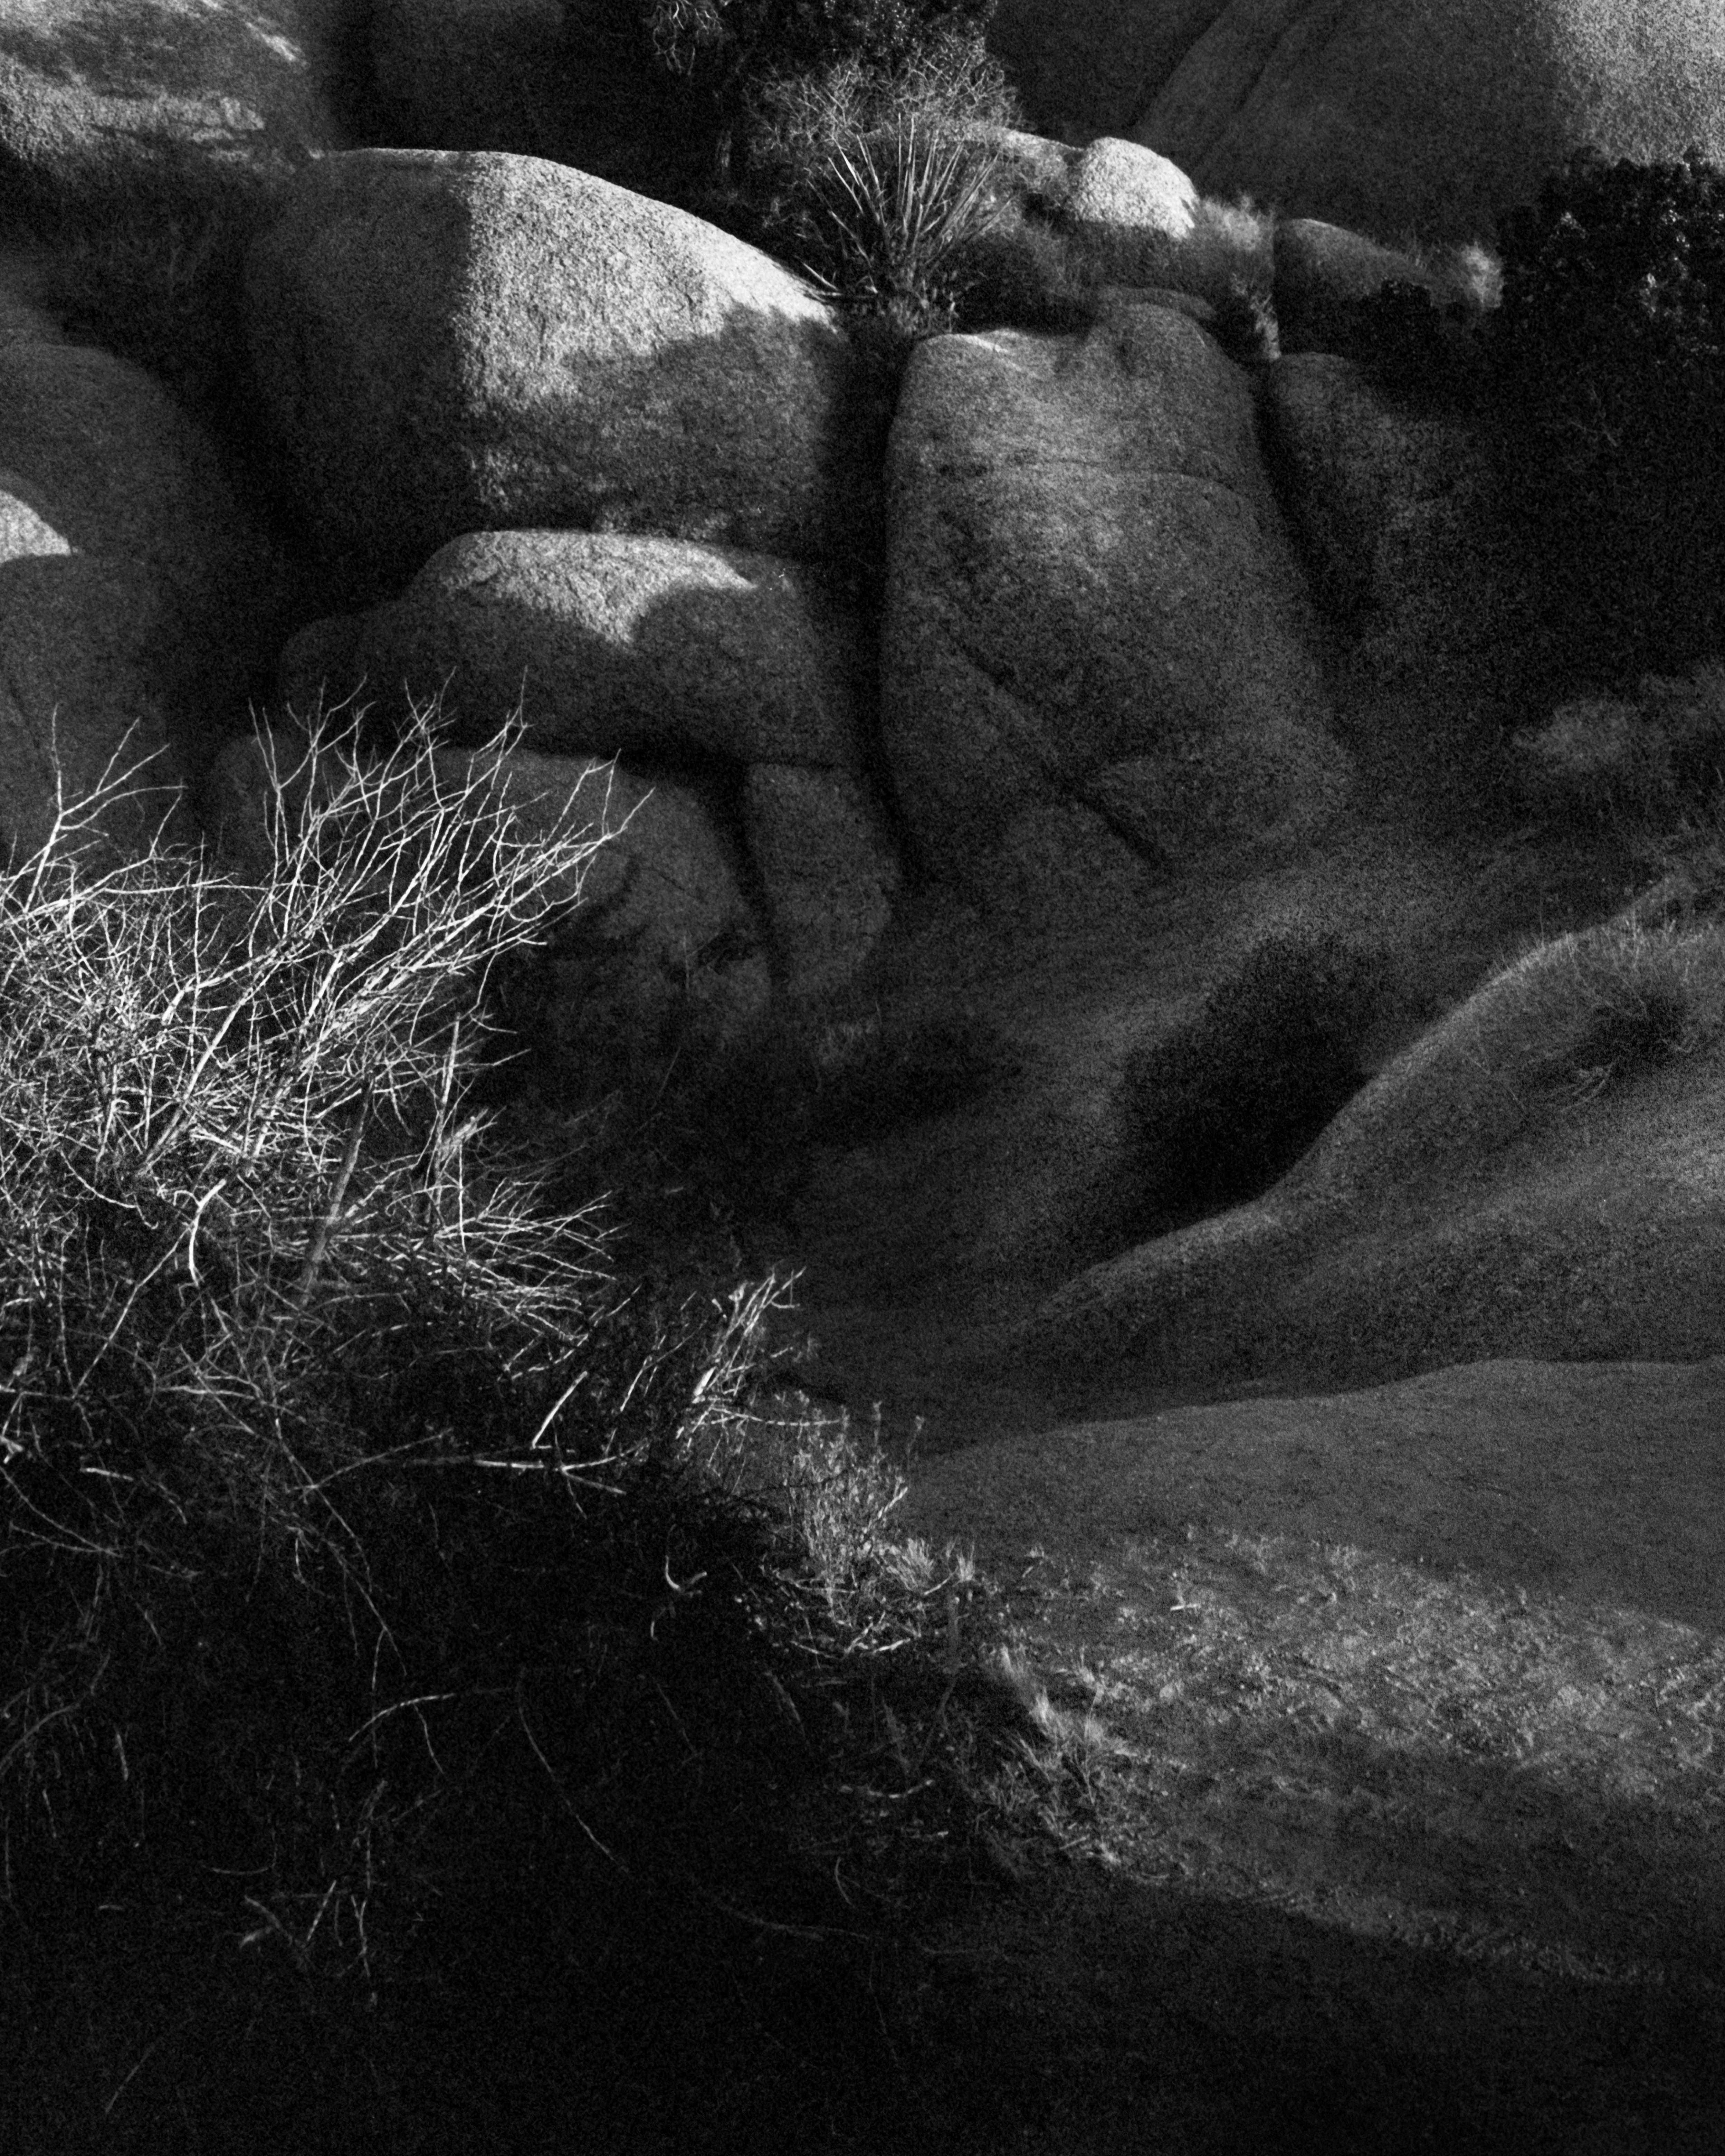 Jumbo Rocks California #2 - roches désertiques analogiques noires et blanches  - Contemporain Photograph par Ugne Pouwell